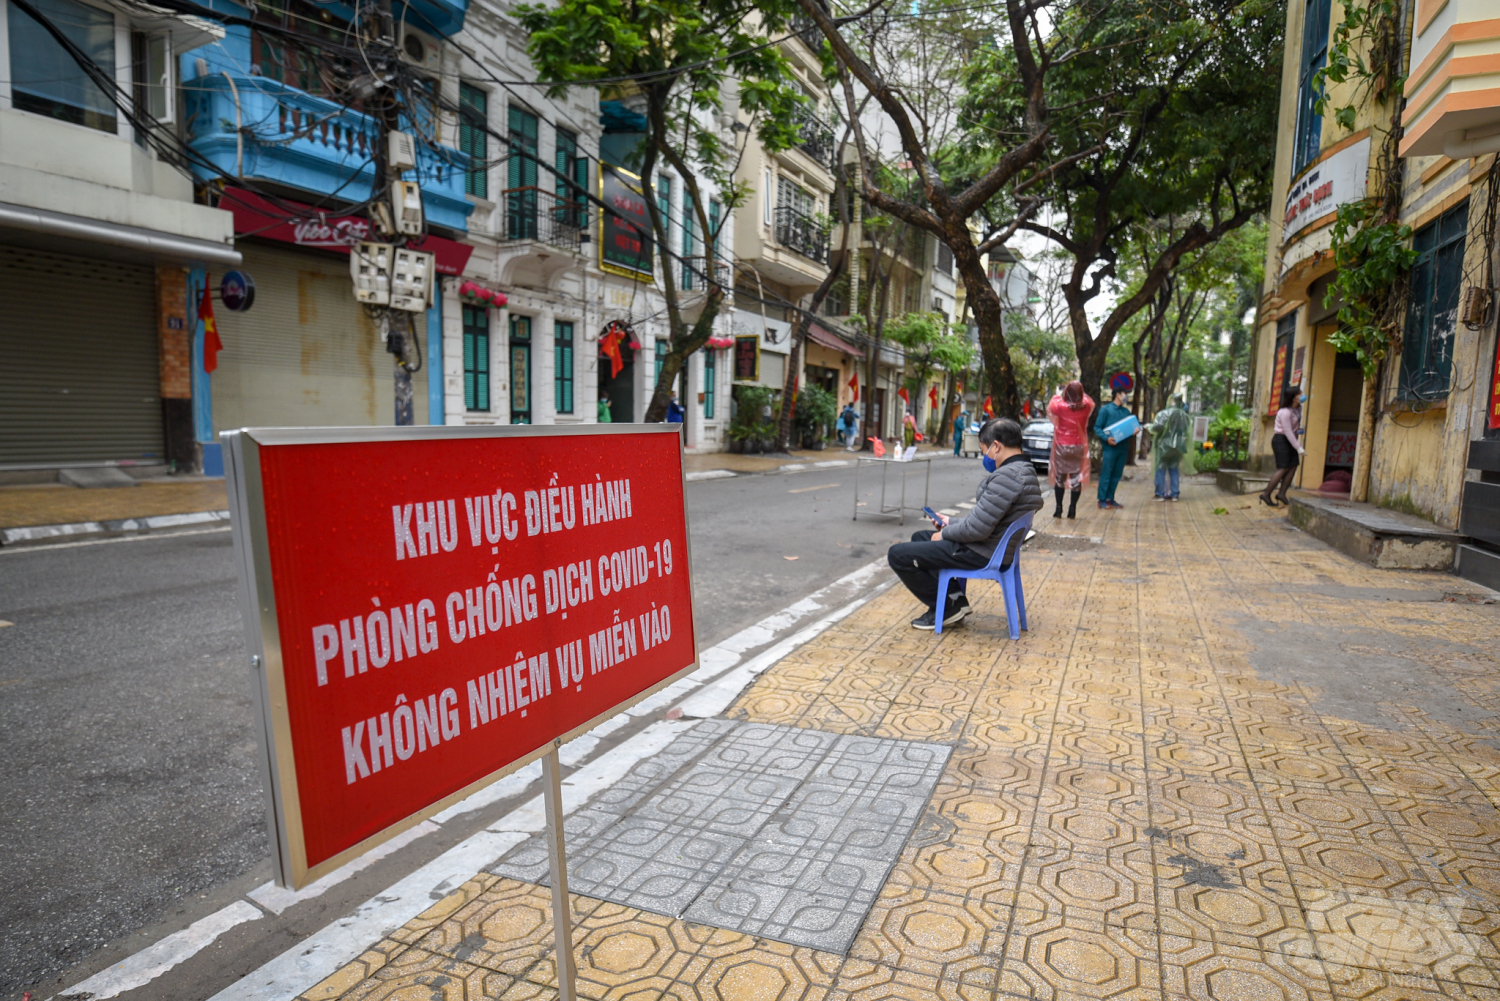 Sau đó thành phố Hà Nội ra quyết định phong tỏa một số nhà trên phố này để rà soát những người tiếp xúc với bệnh nhân, phòng ngừa bệnh lây lan. Ảnh: Tùng Đinh.